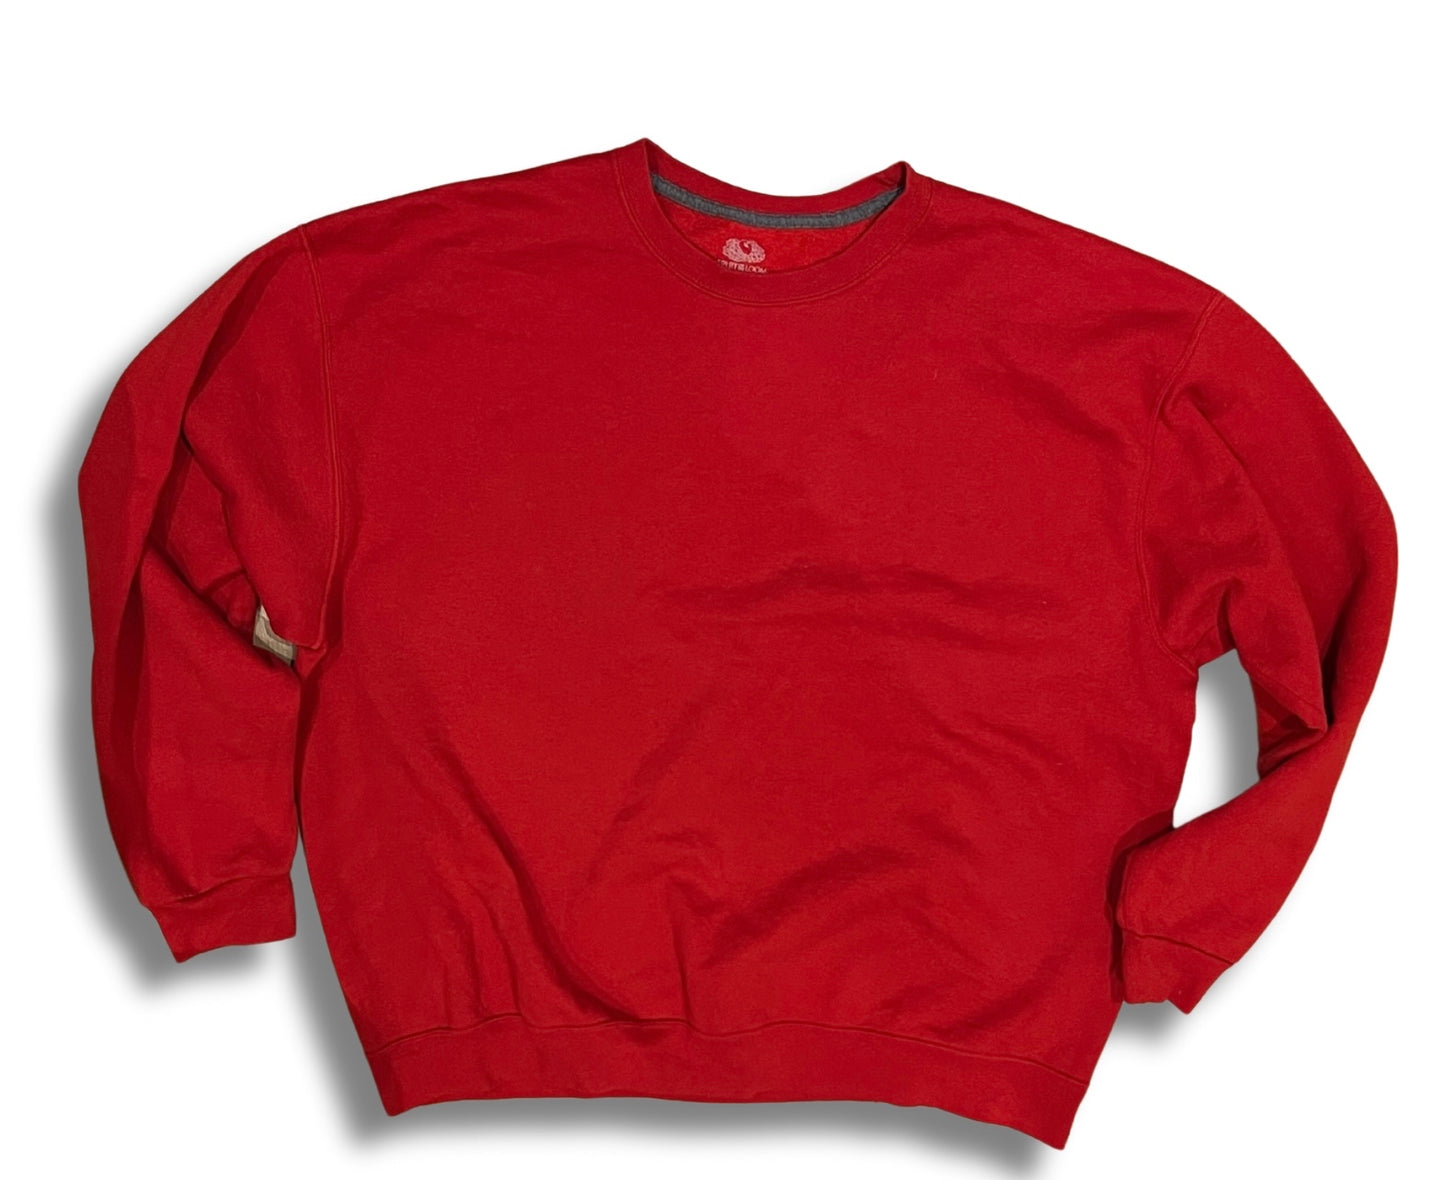 Vintage scarlet red sweatshirt